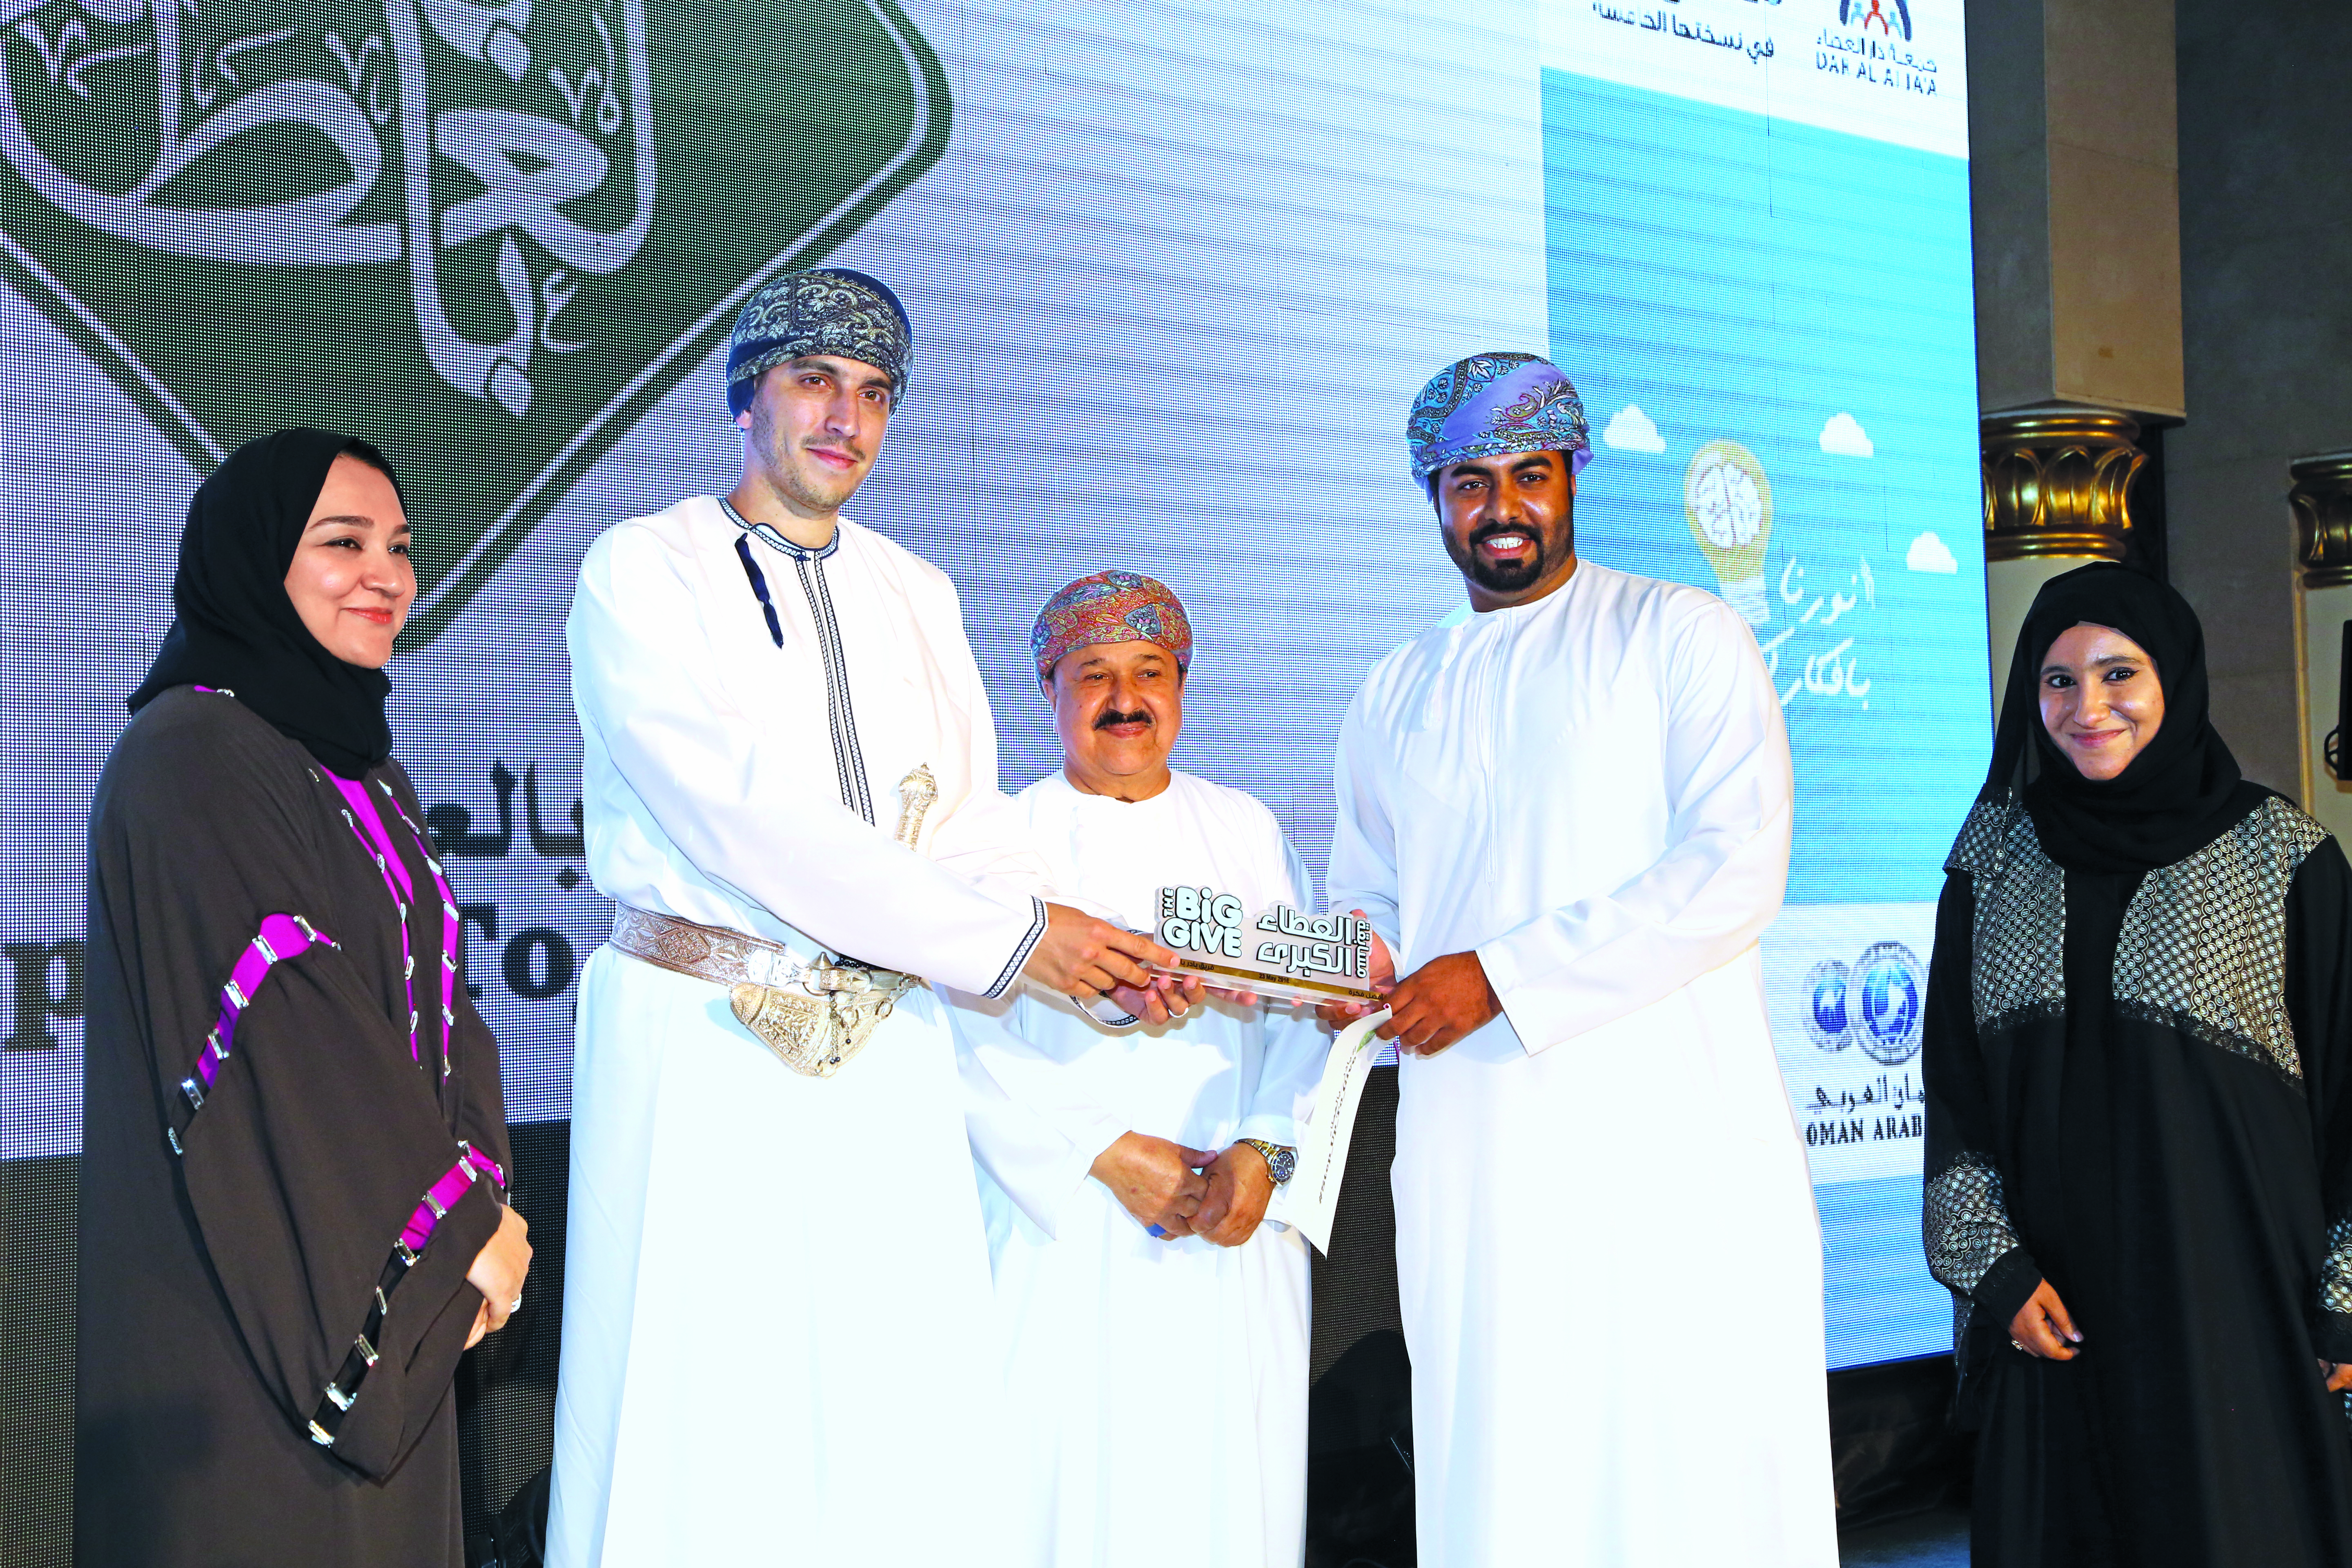 Dar Al Atta announces ‘Big Give Challenge’ winners in Oman